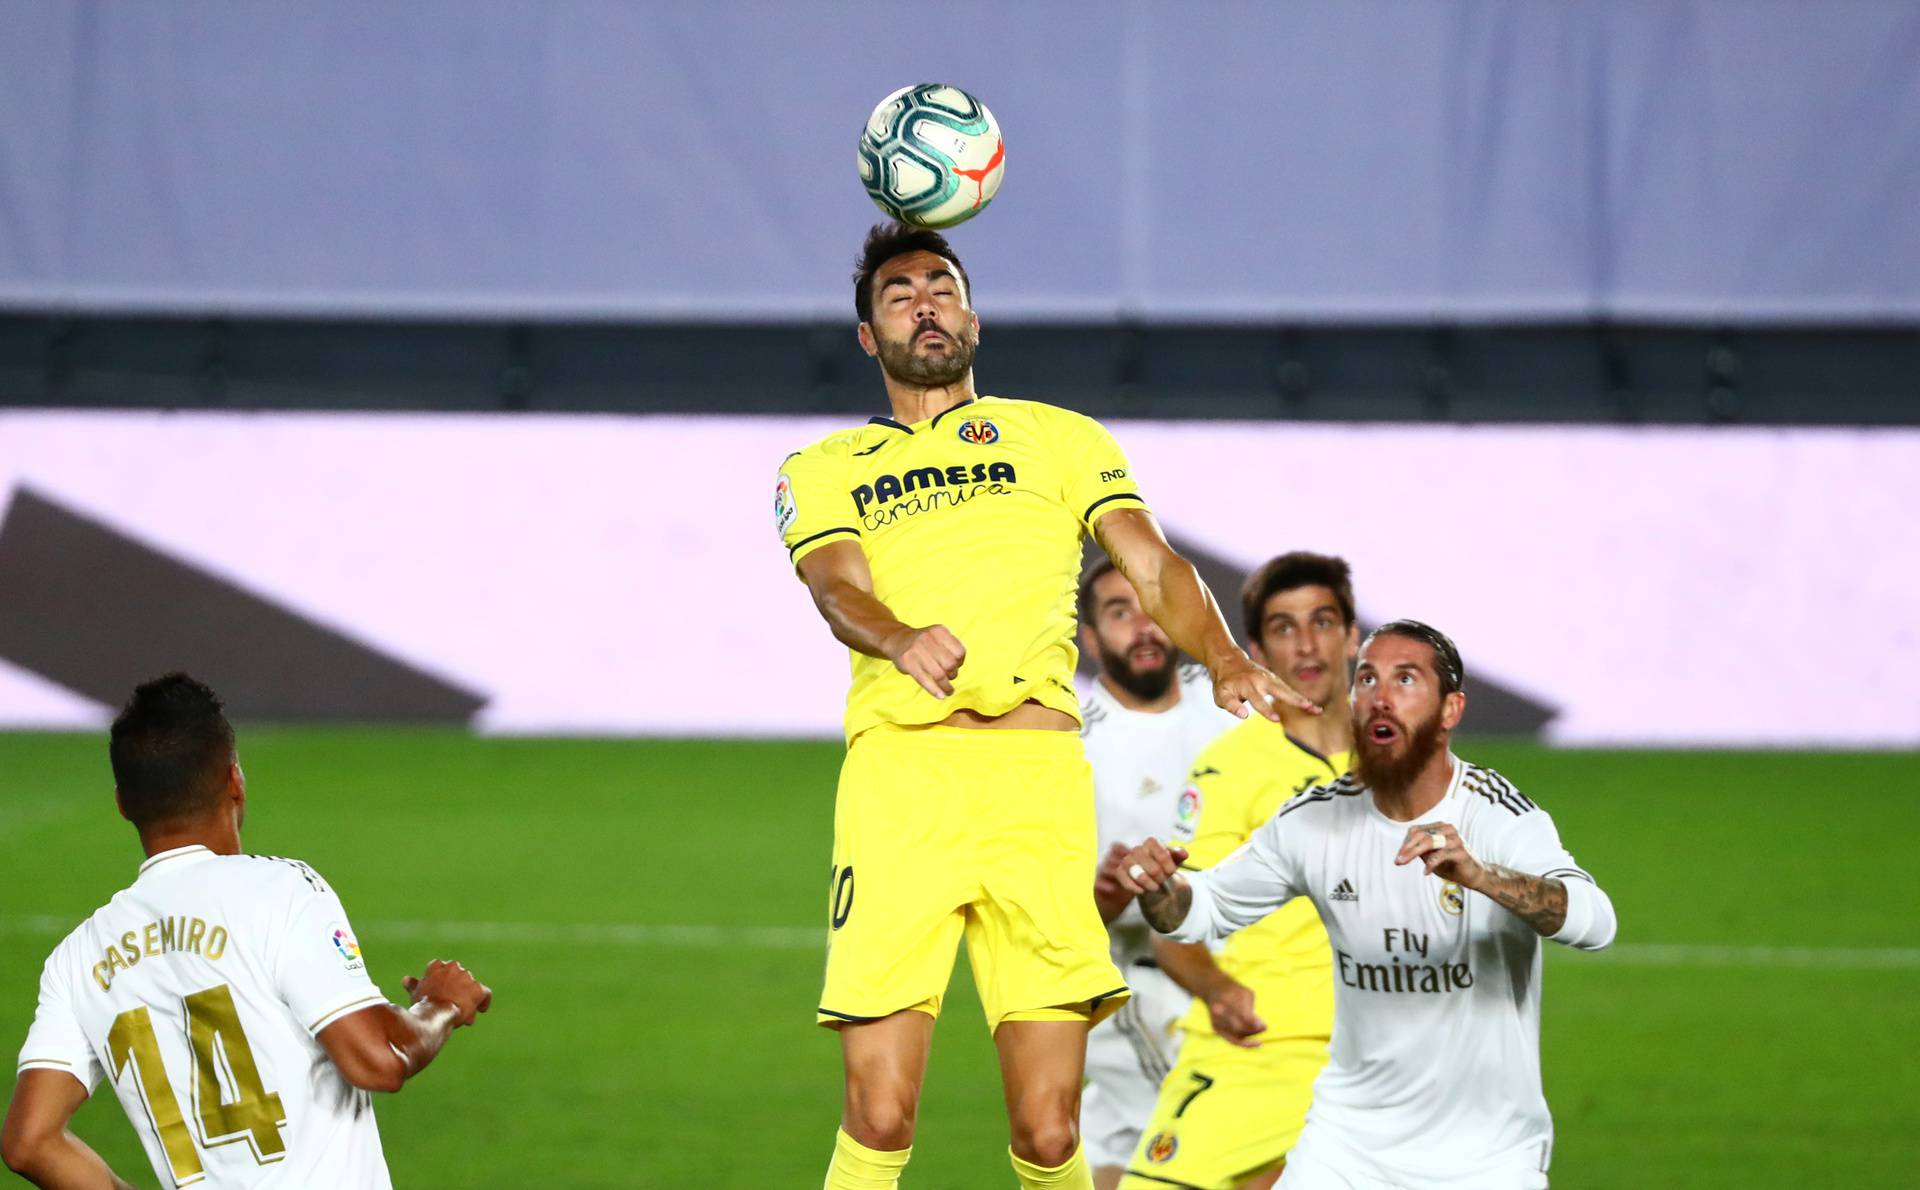 La Liga Santander - Real Madrid v Villarreal